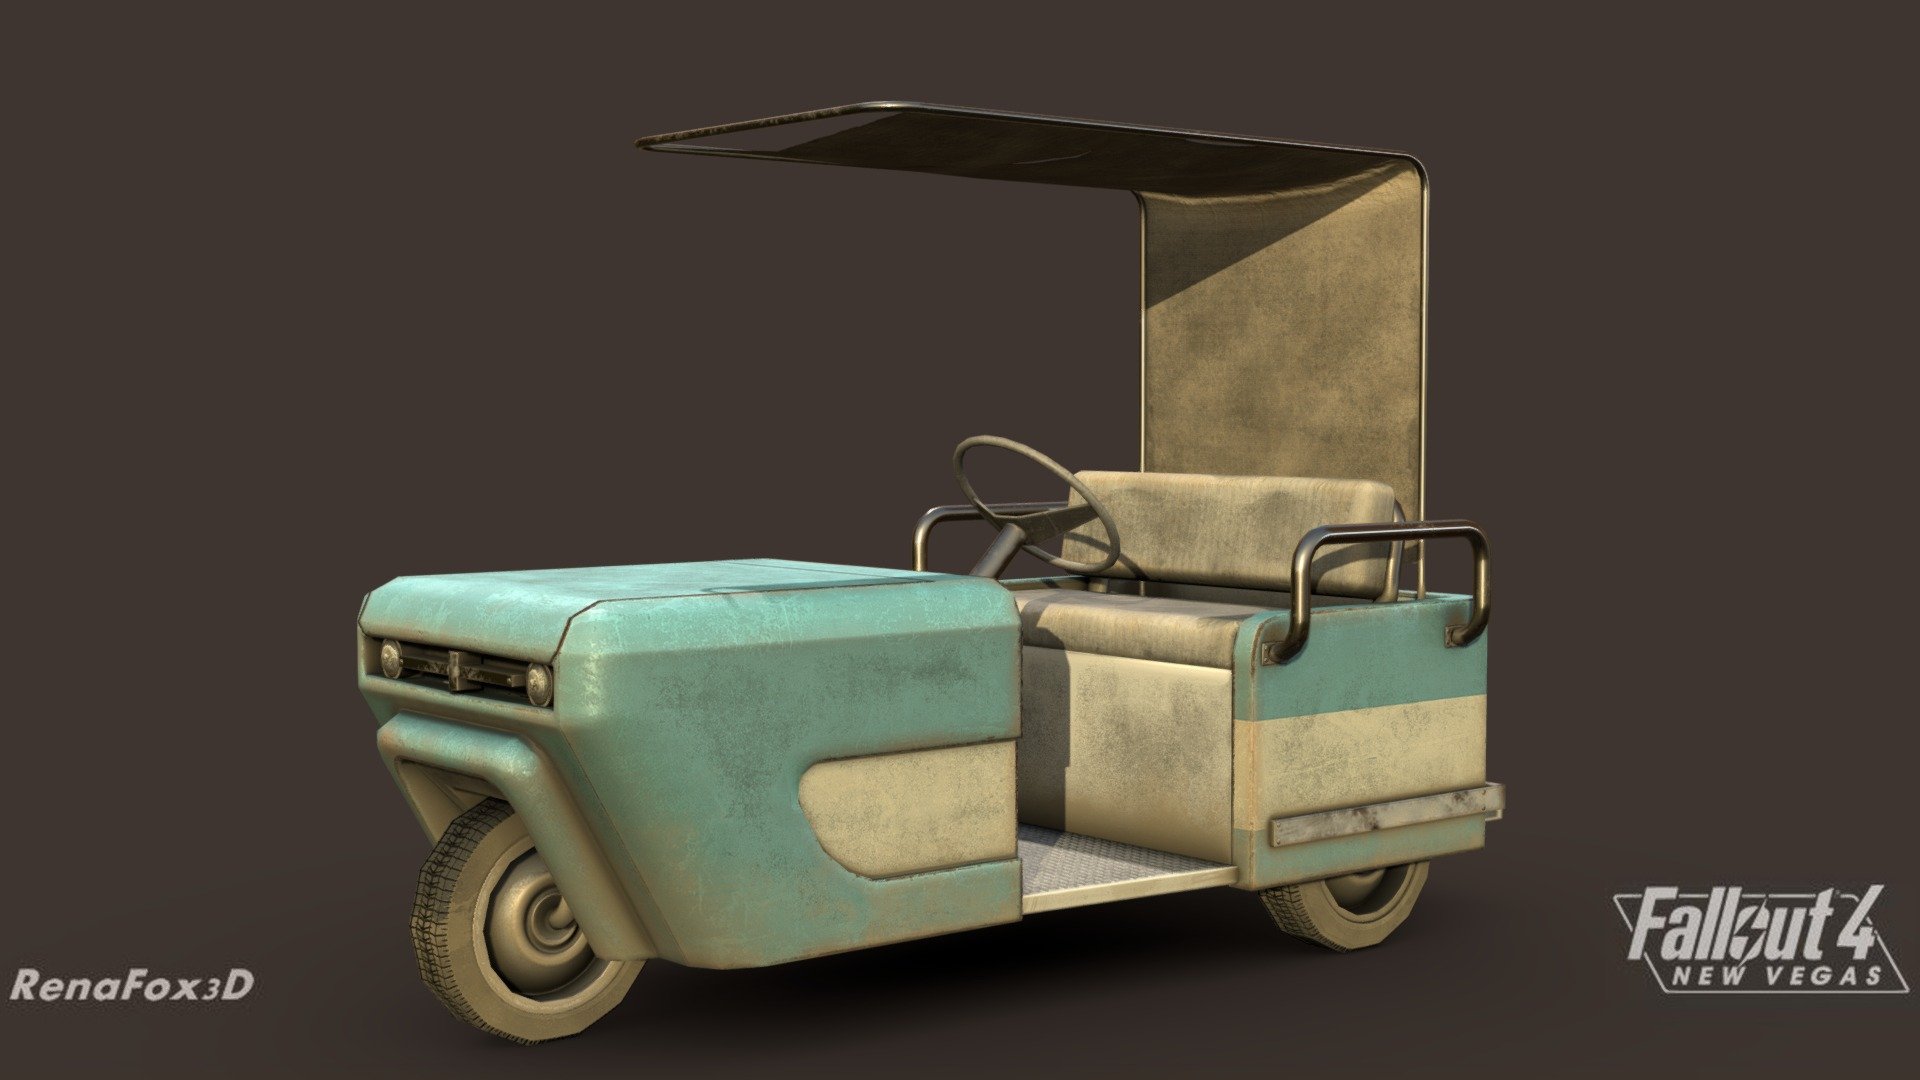 Remake of the Fallout New Vegas golf cart for the Fallout 4: New Vegas project

Made in 3DSMax and Substance Painter - F4NV - Golf Cart - 3D model by Renafox (@kryik1023) 3d model